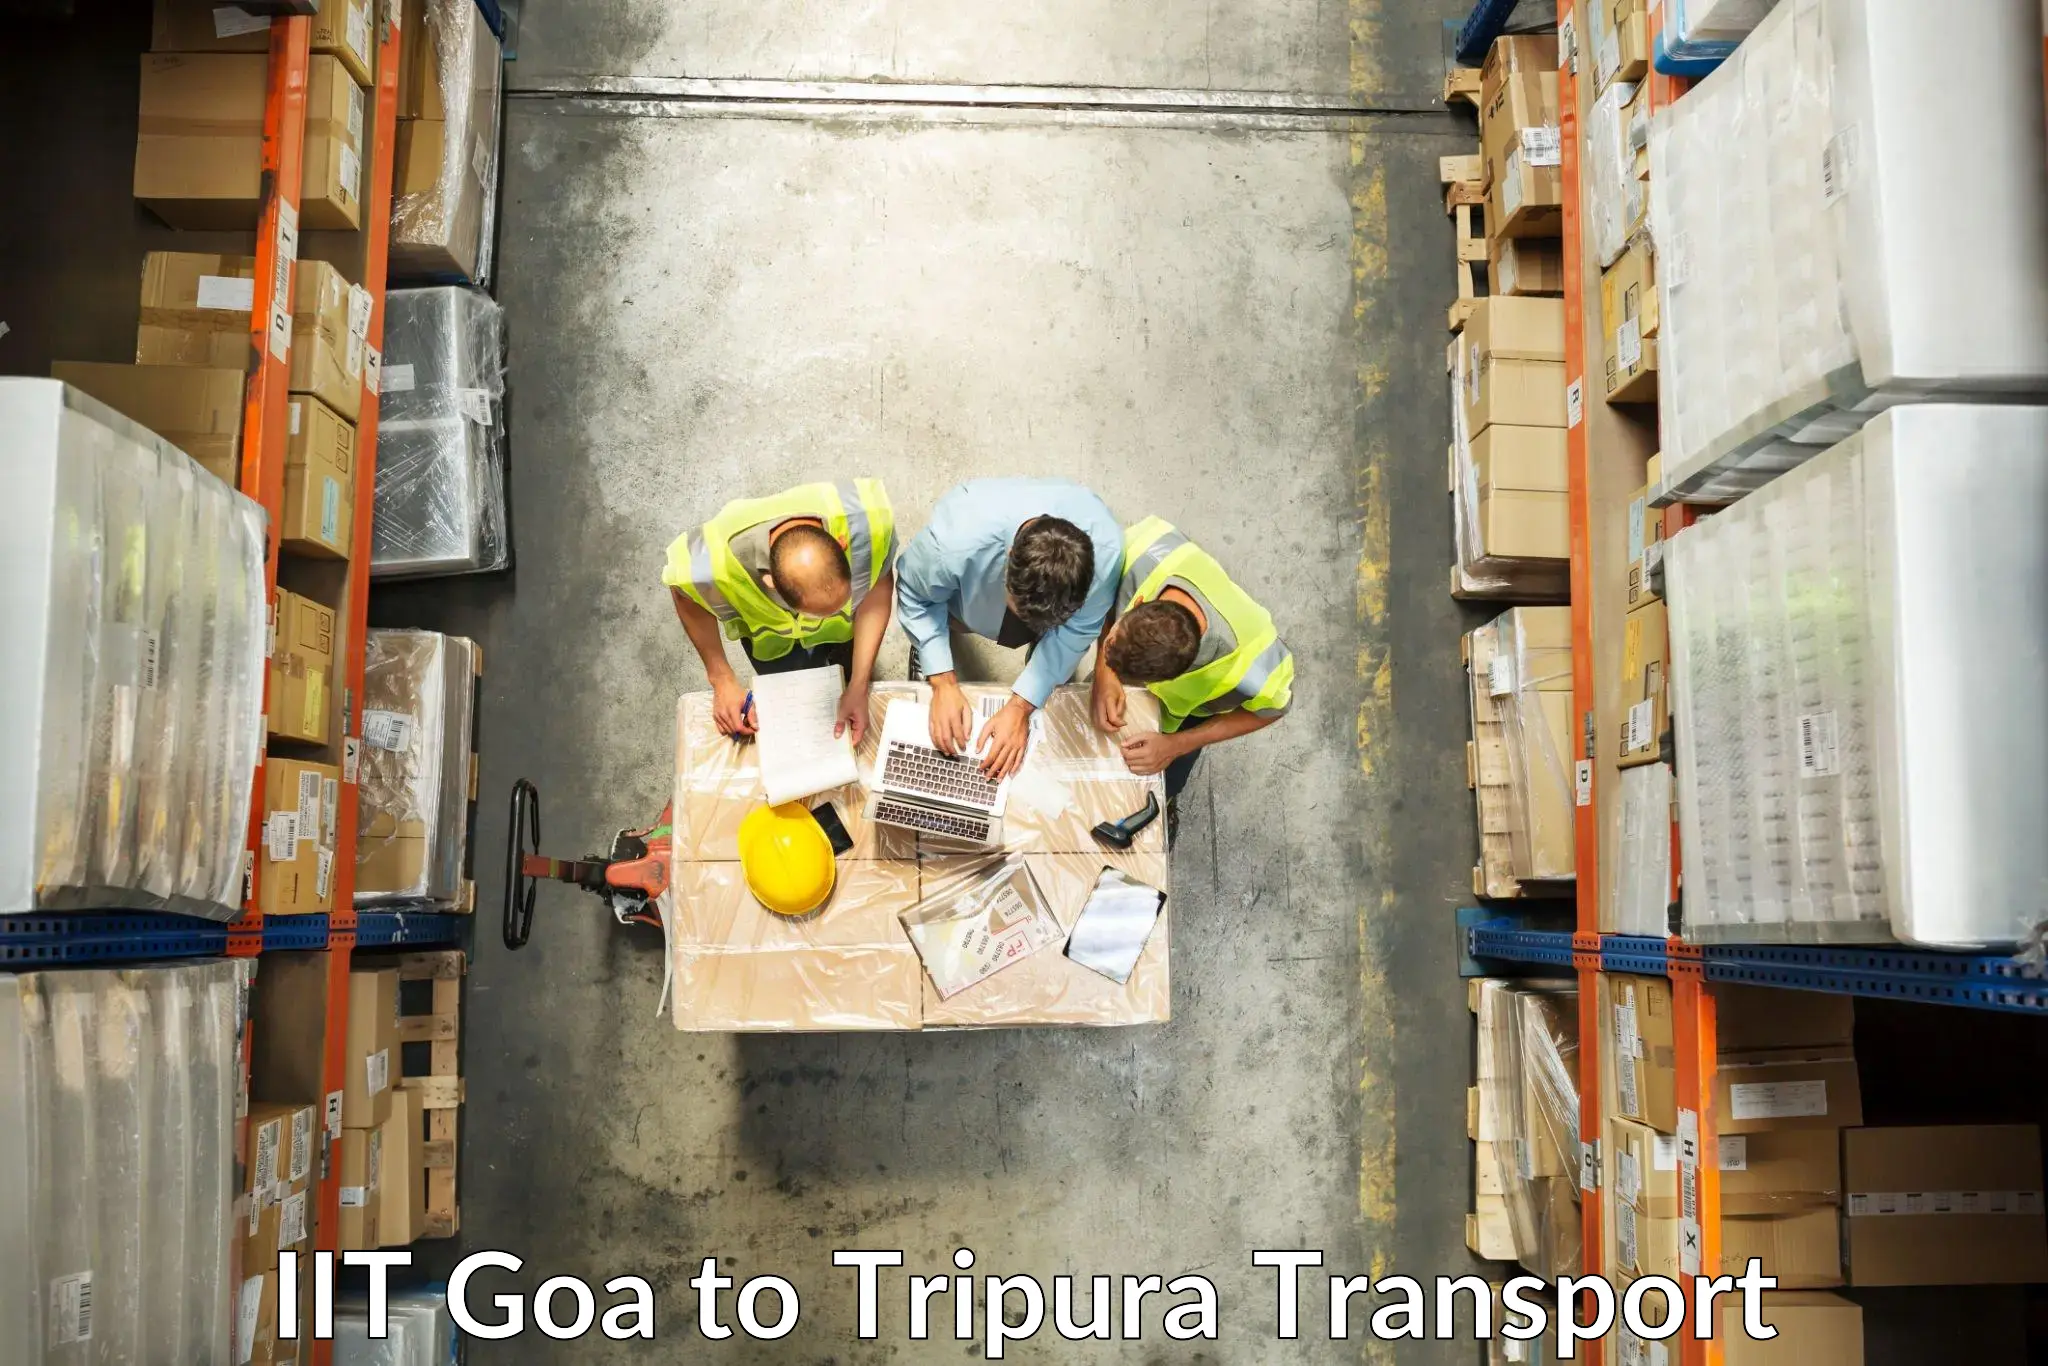 Door to door transport services IIT Goa to Udaipur Tripura